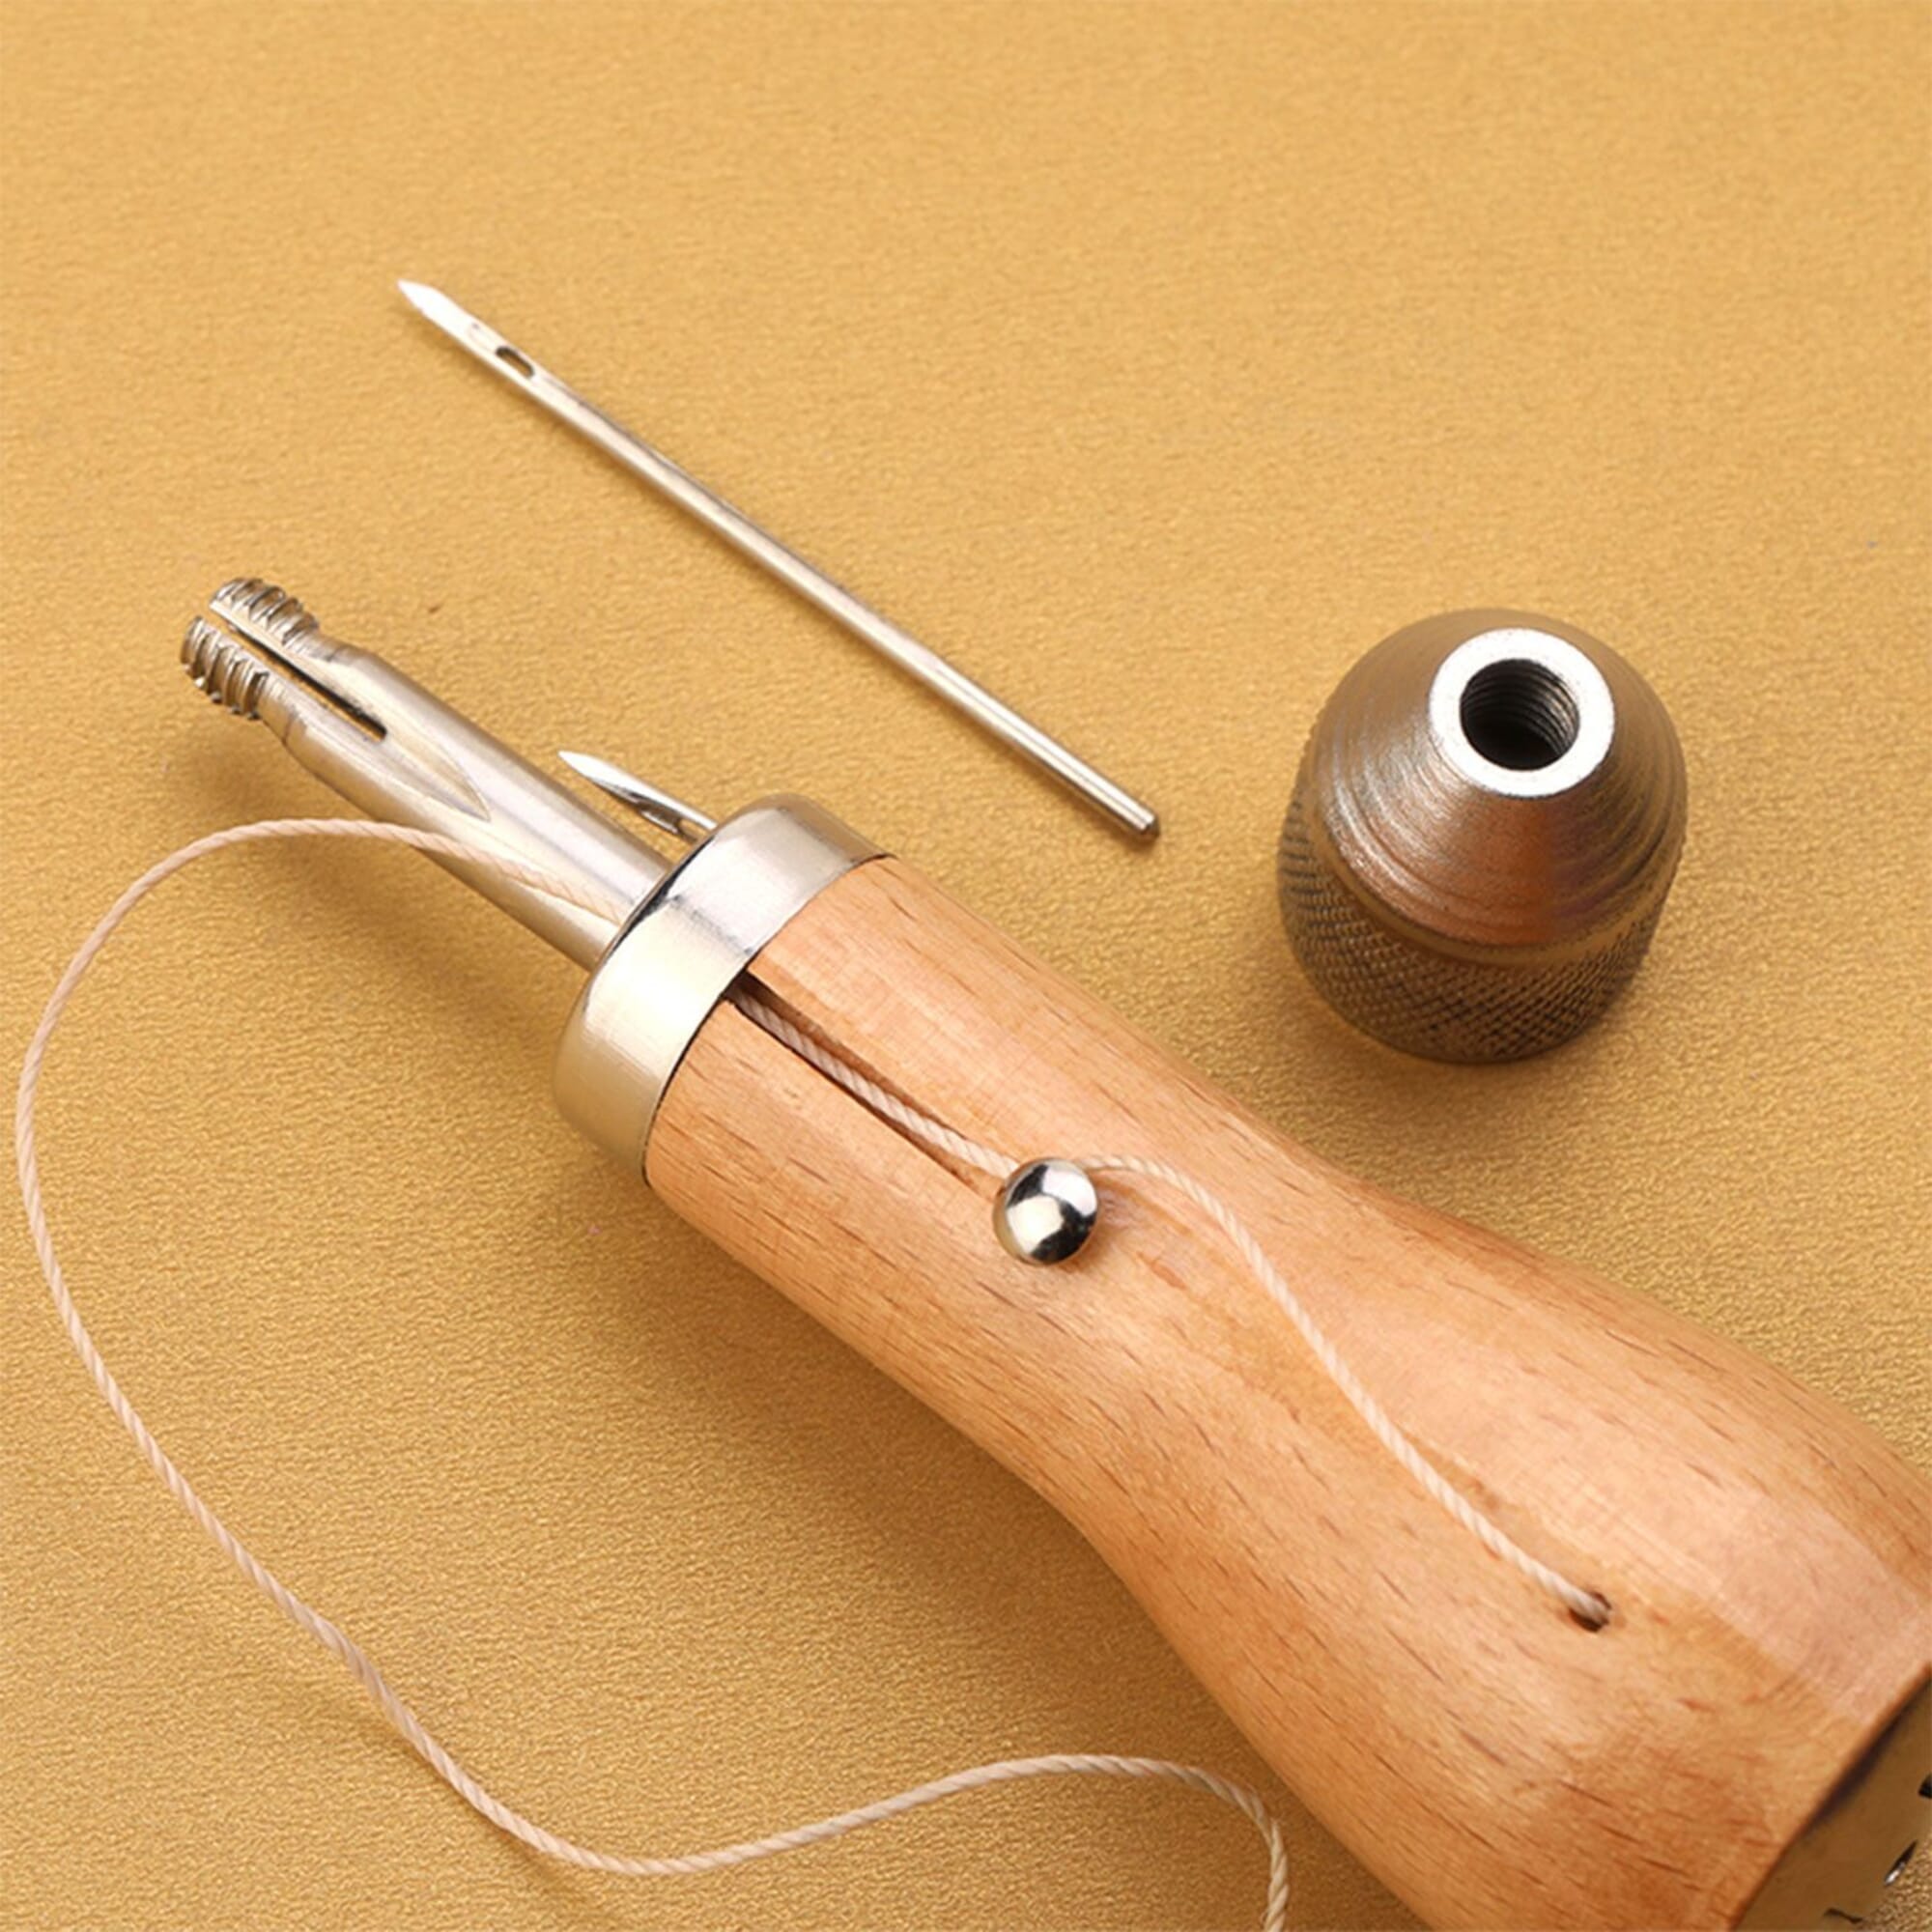 Speedy Stitcher Products — Speedy Stitcher Sewing Awl